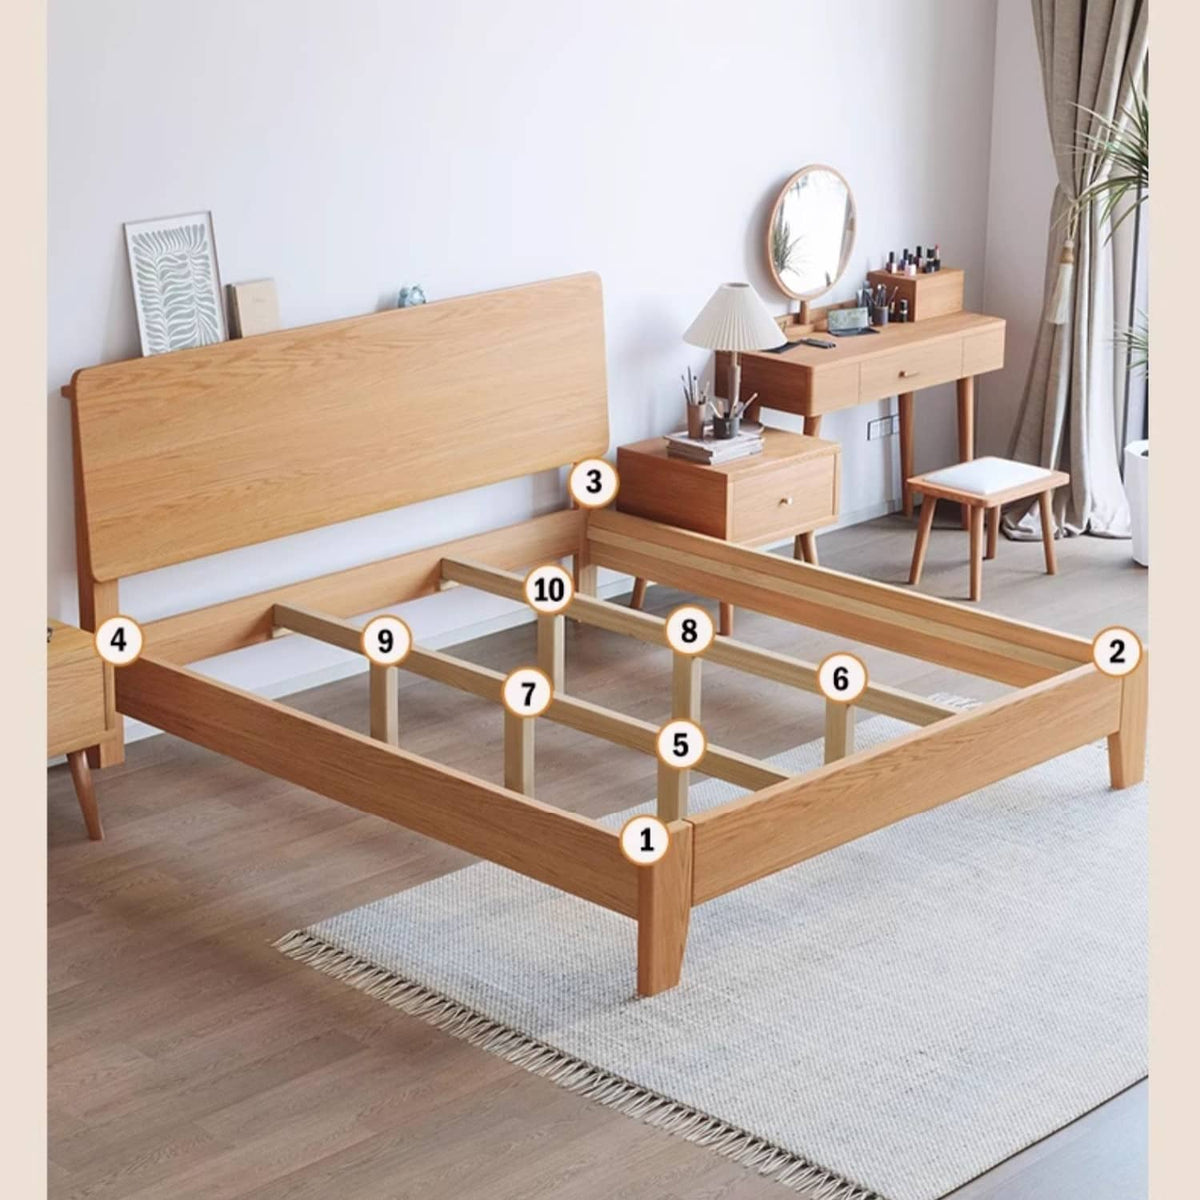 Natural Wood Color Rubber Wood Pine Bed - Elegant & Durable Bedroom Furniture hmak-235